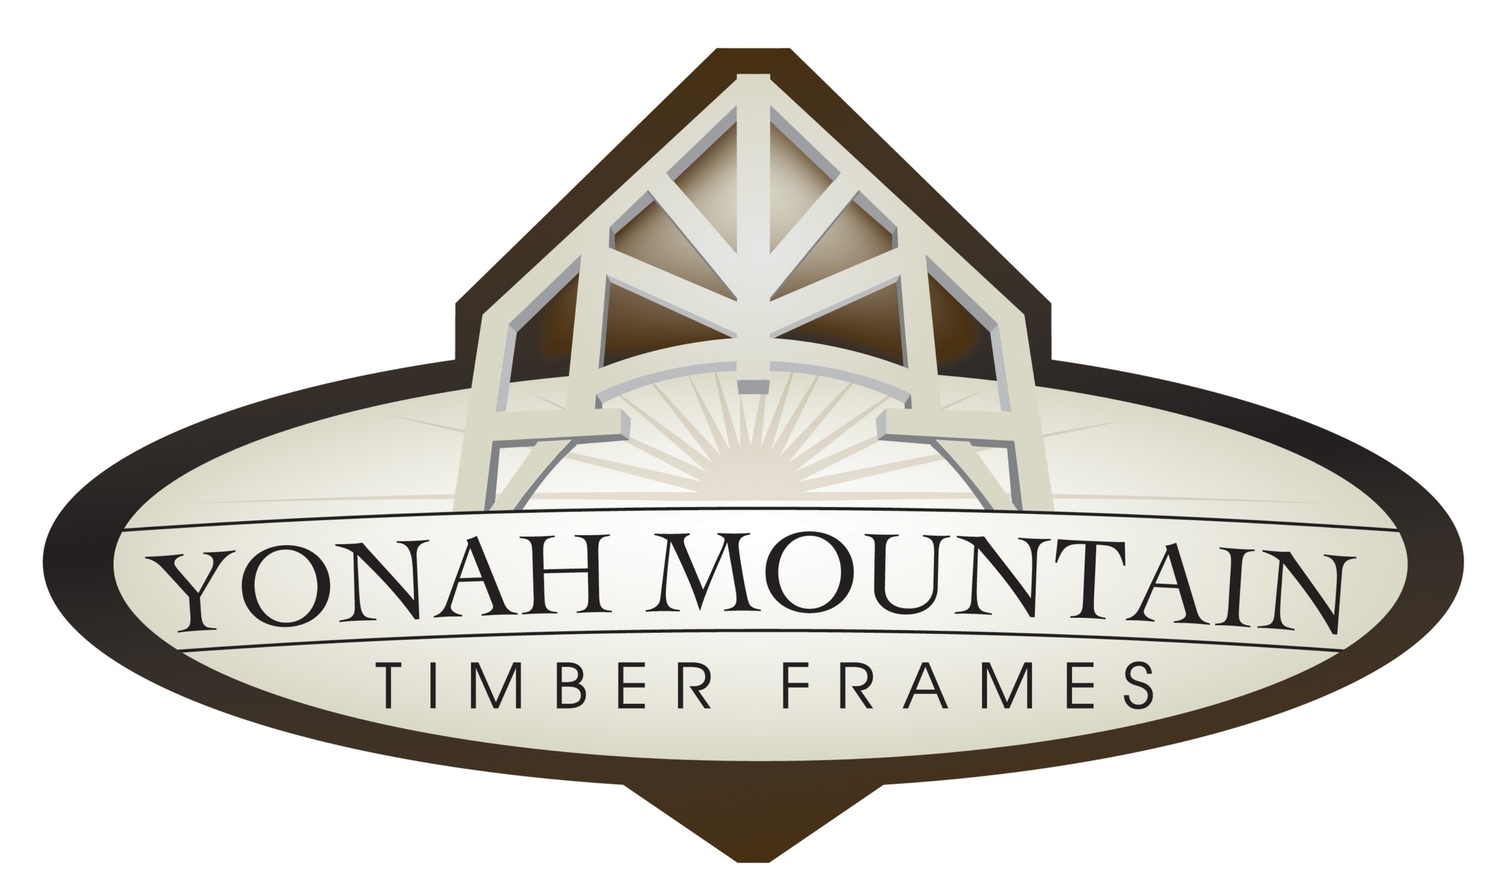 YONAH MOUNTAIN TIMBER FRAMES